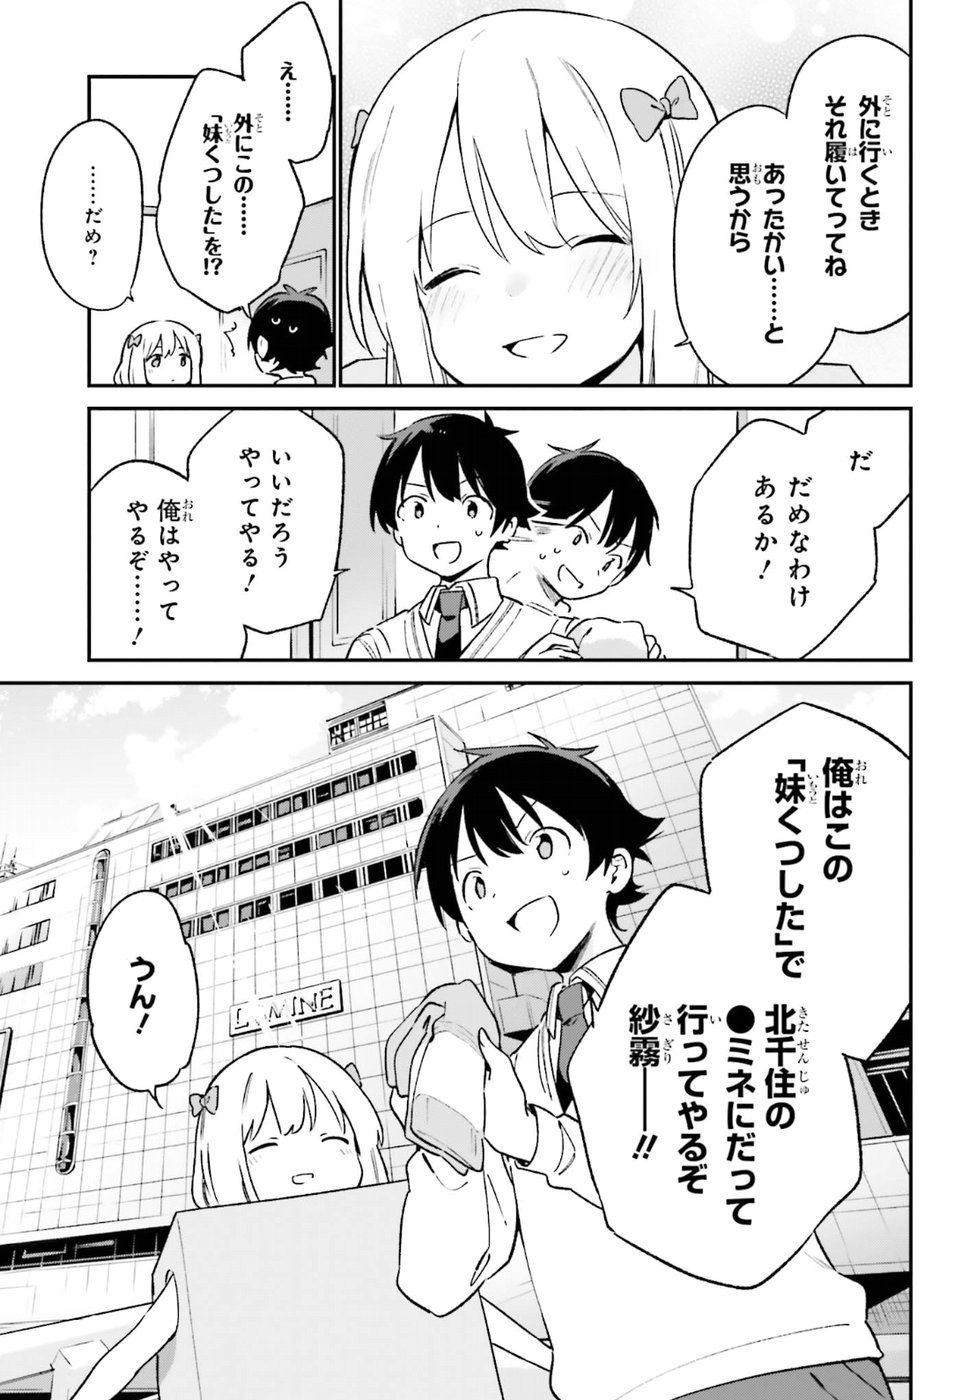 Ero Manga Sensei - Chapter 57 - Page 13